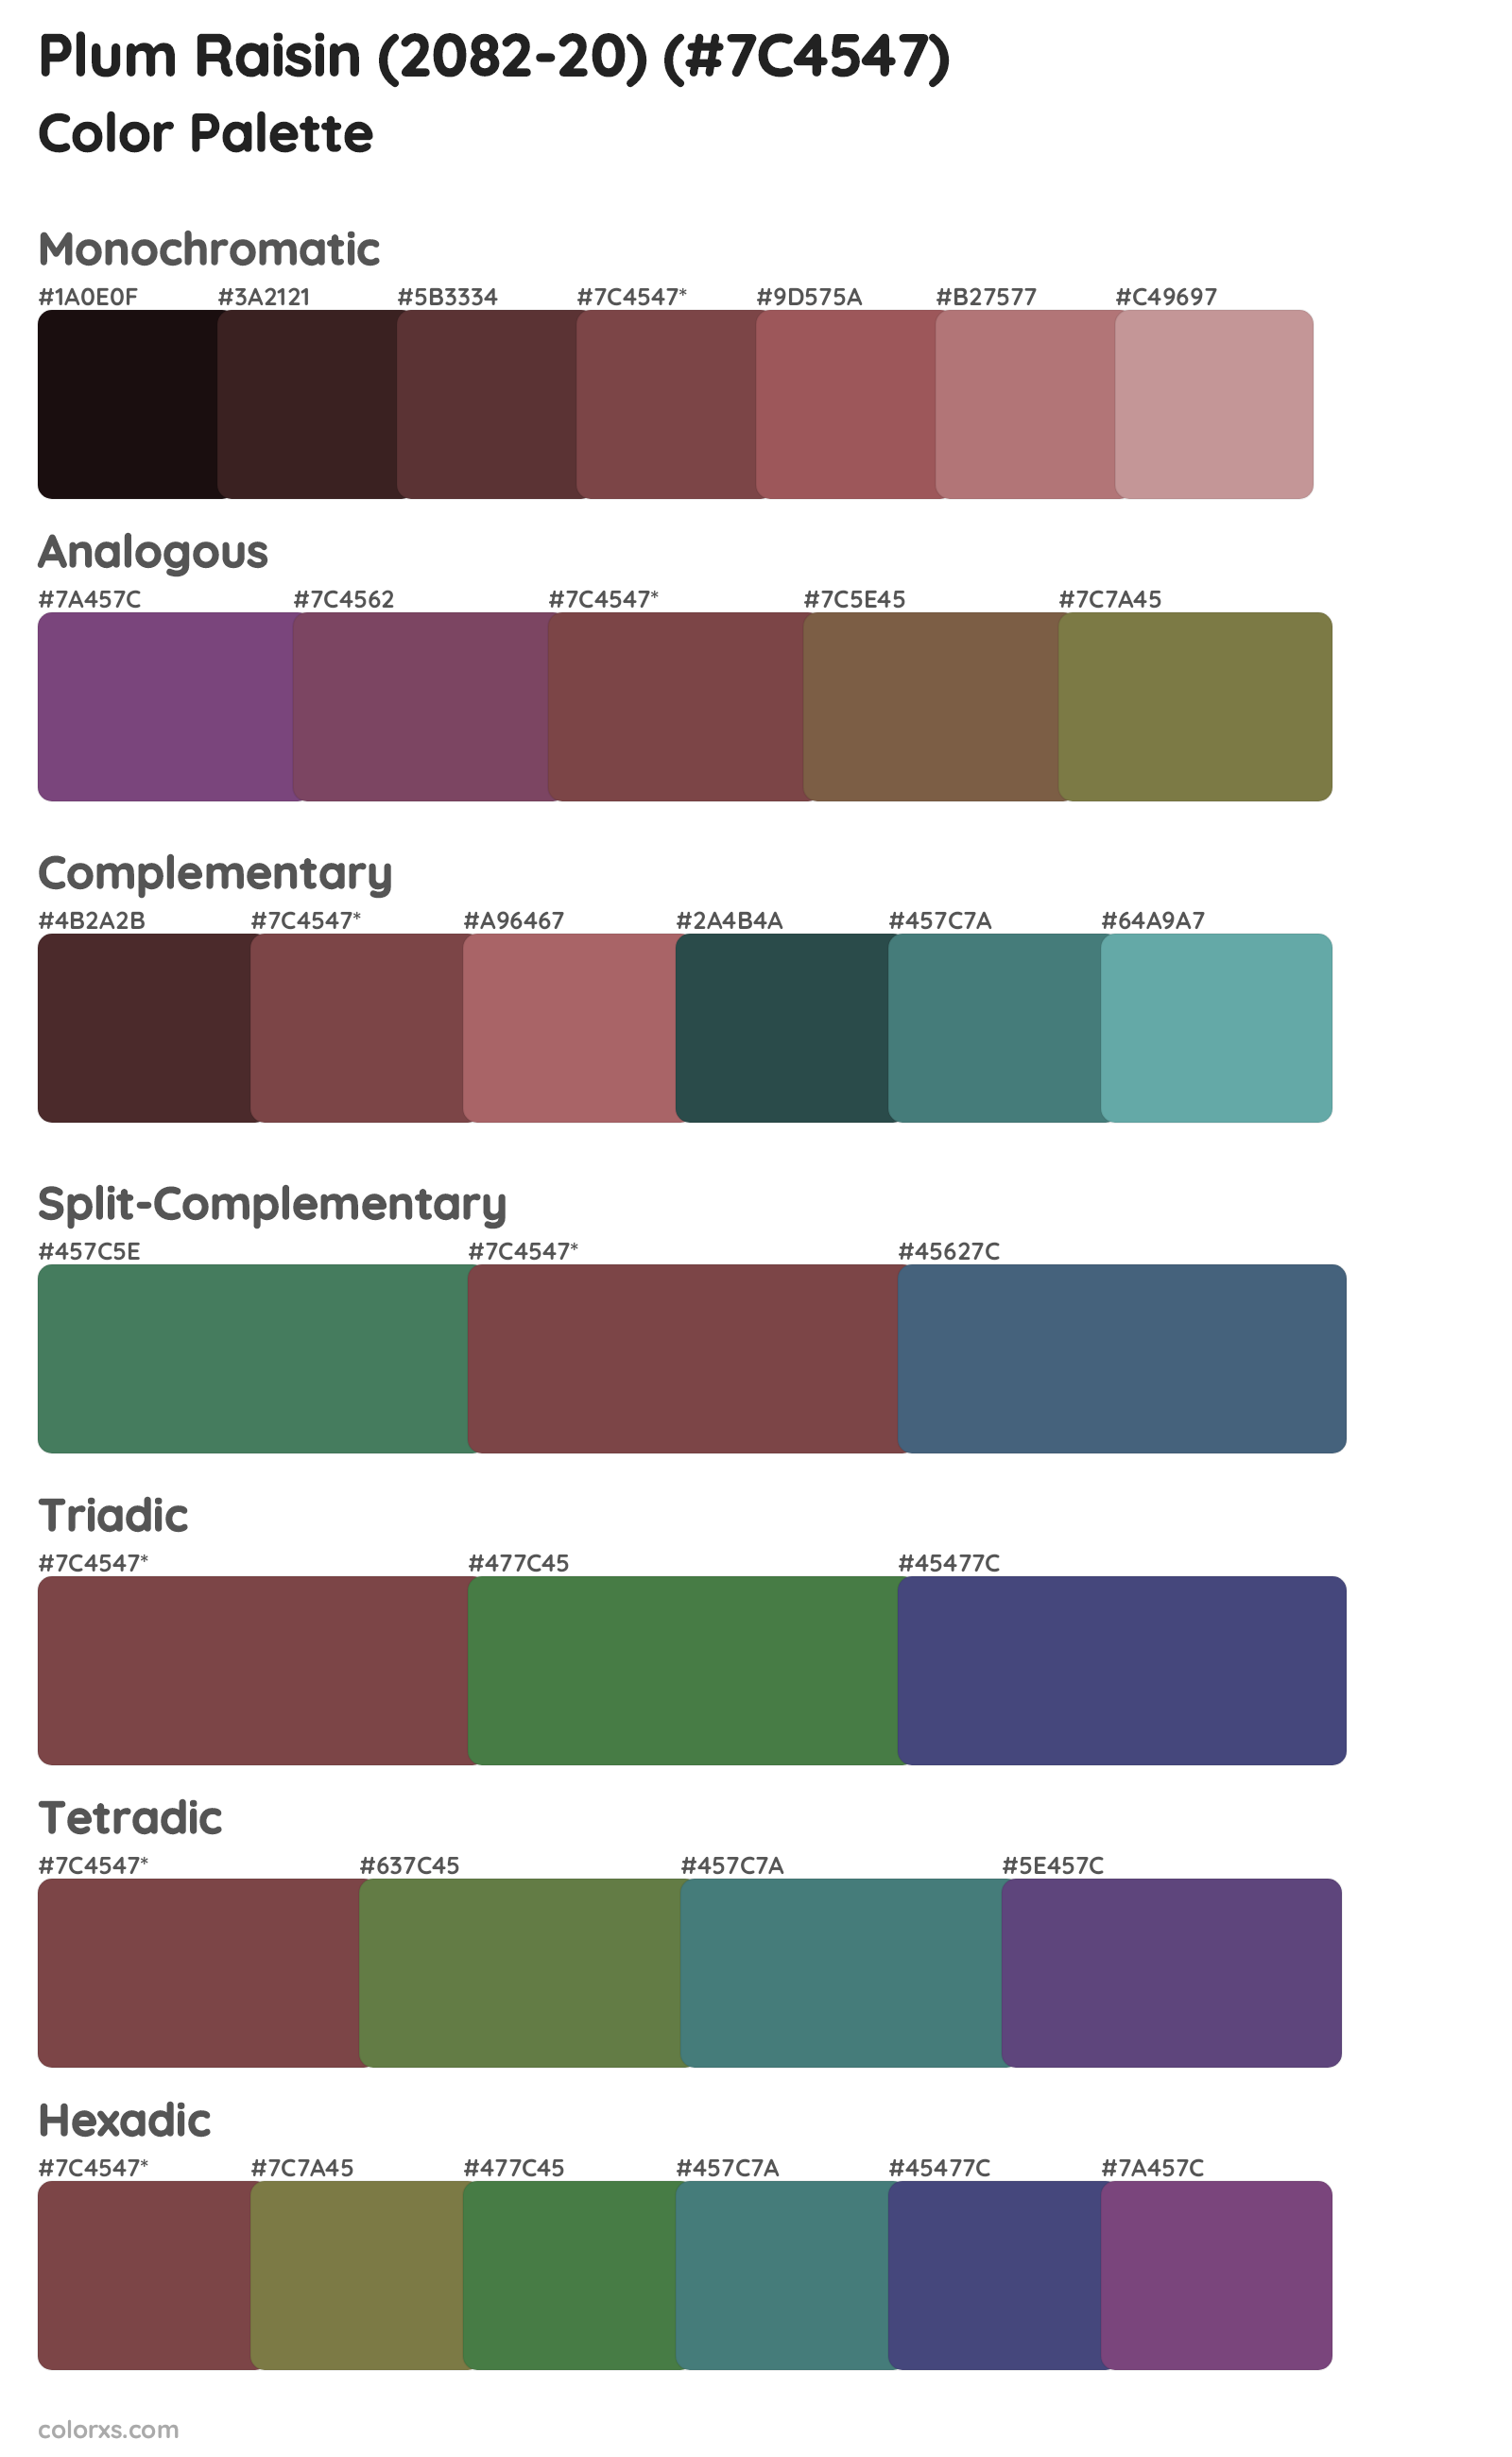 Plum Raisin (2082-20) Color Scheme Palettes